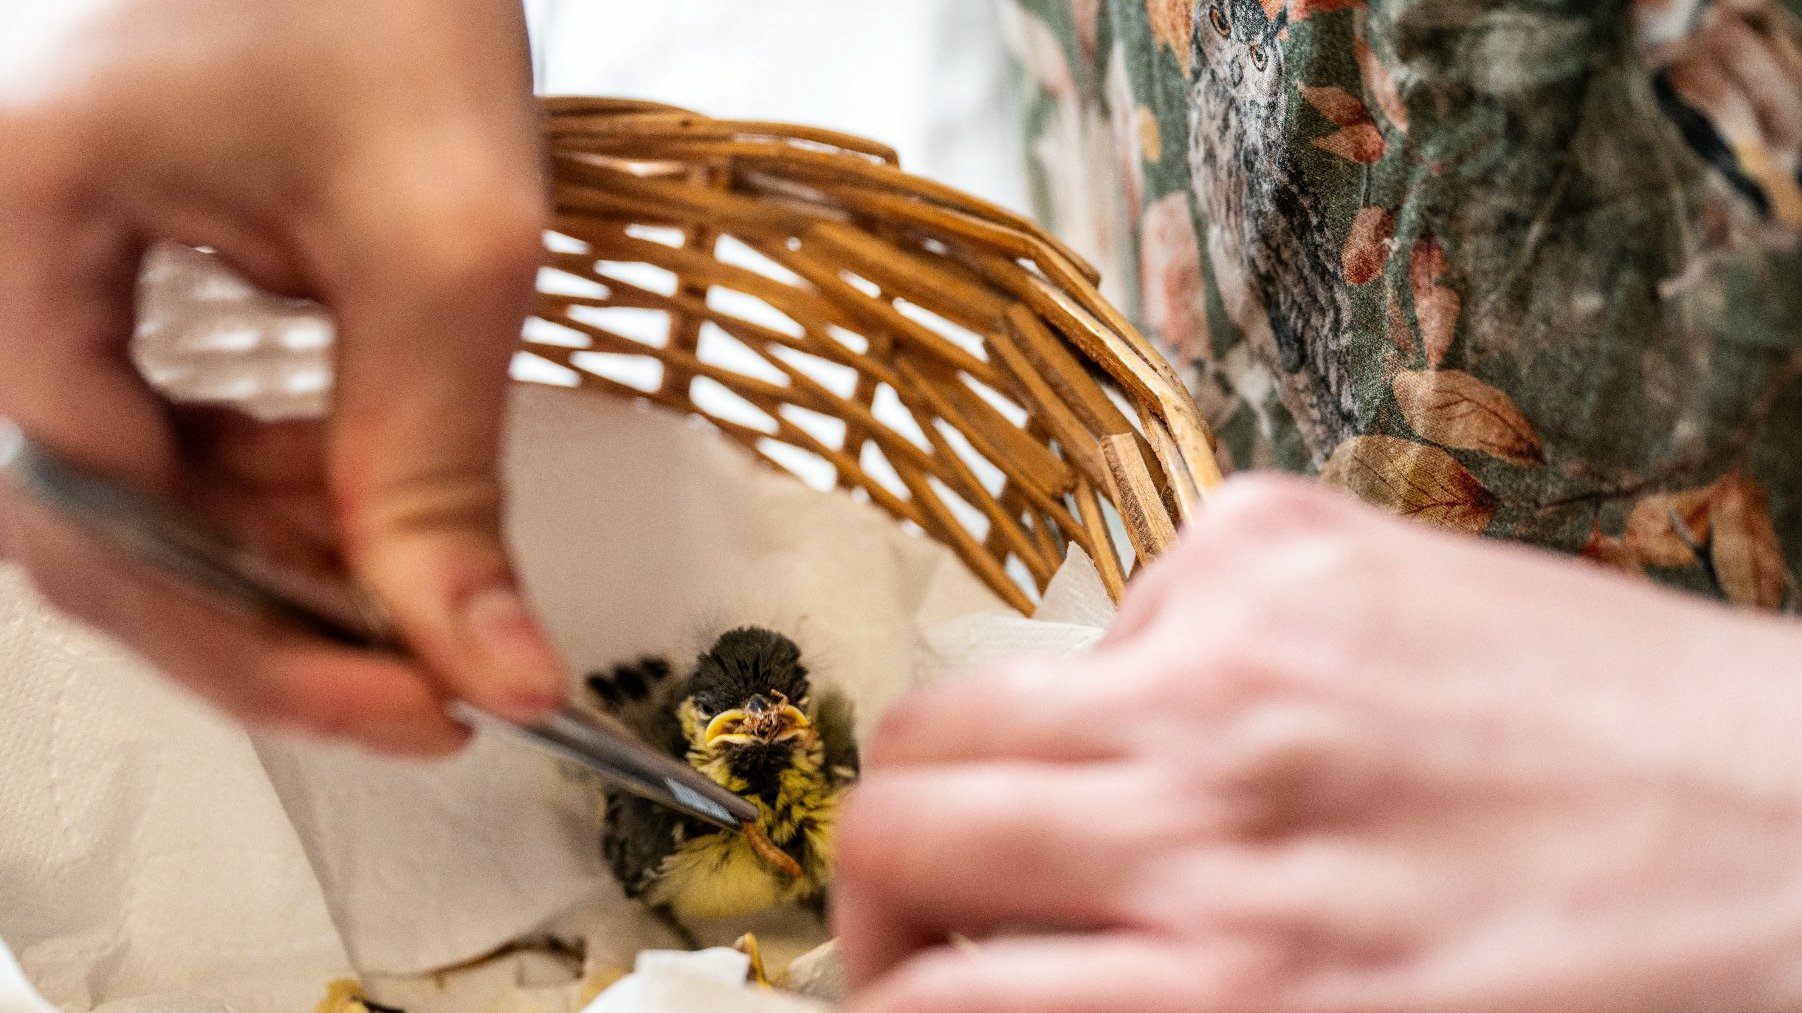 Zdjęcie przedstawia koszyczek z ptaszkiem. Na zdjęciu widać też ręce, które karmią ptaszka robakami za pomocą pensety.